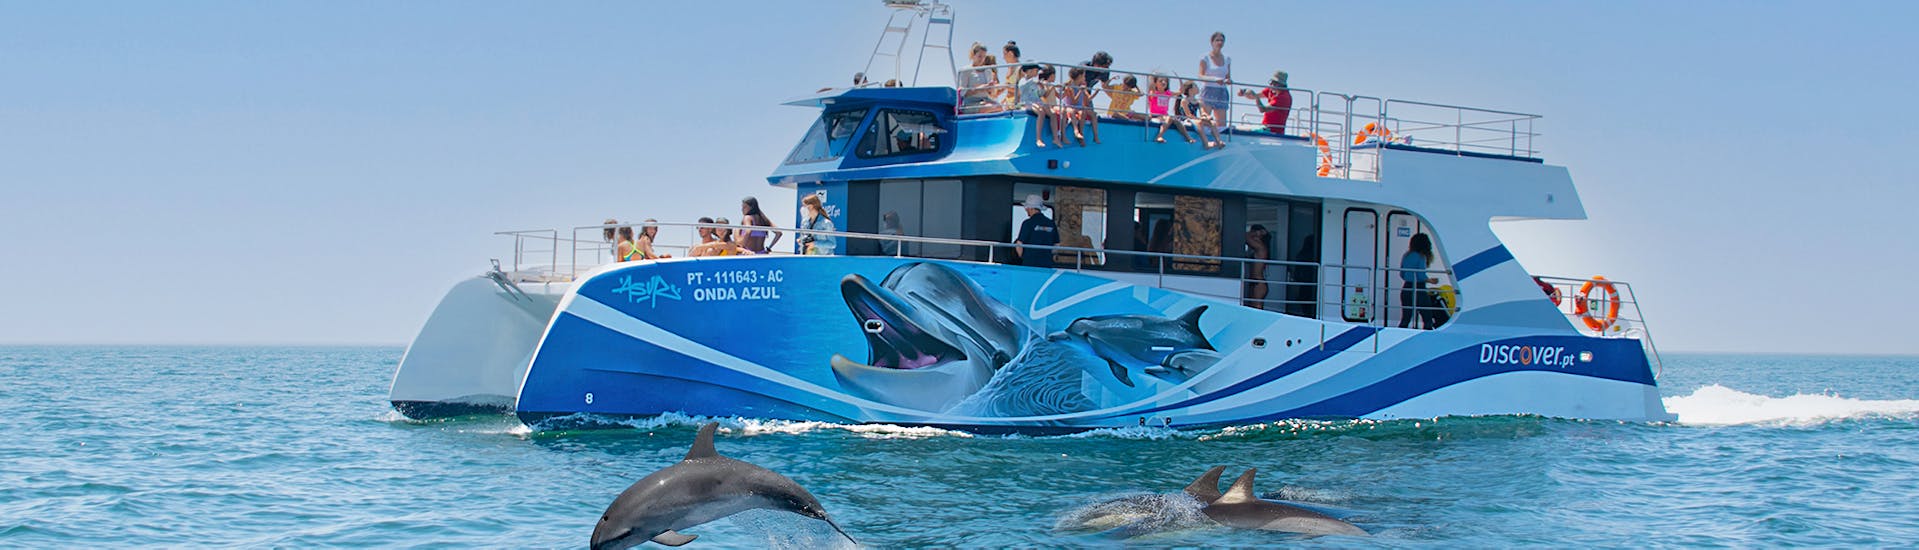 Dolfijnen zwemmen naast de boot tijdens de boottocht van Lagos met Dolfijnen Spotten.